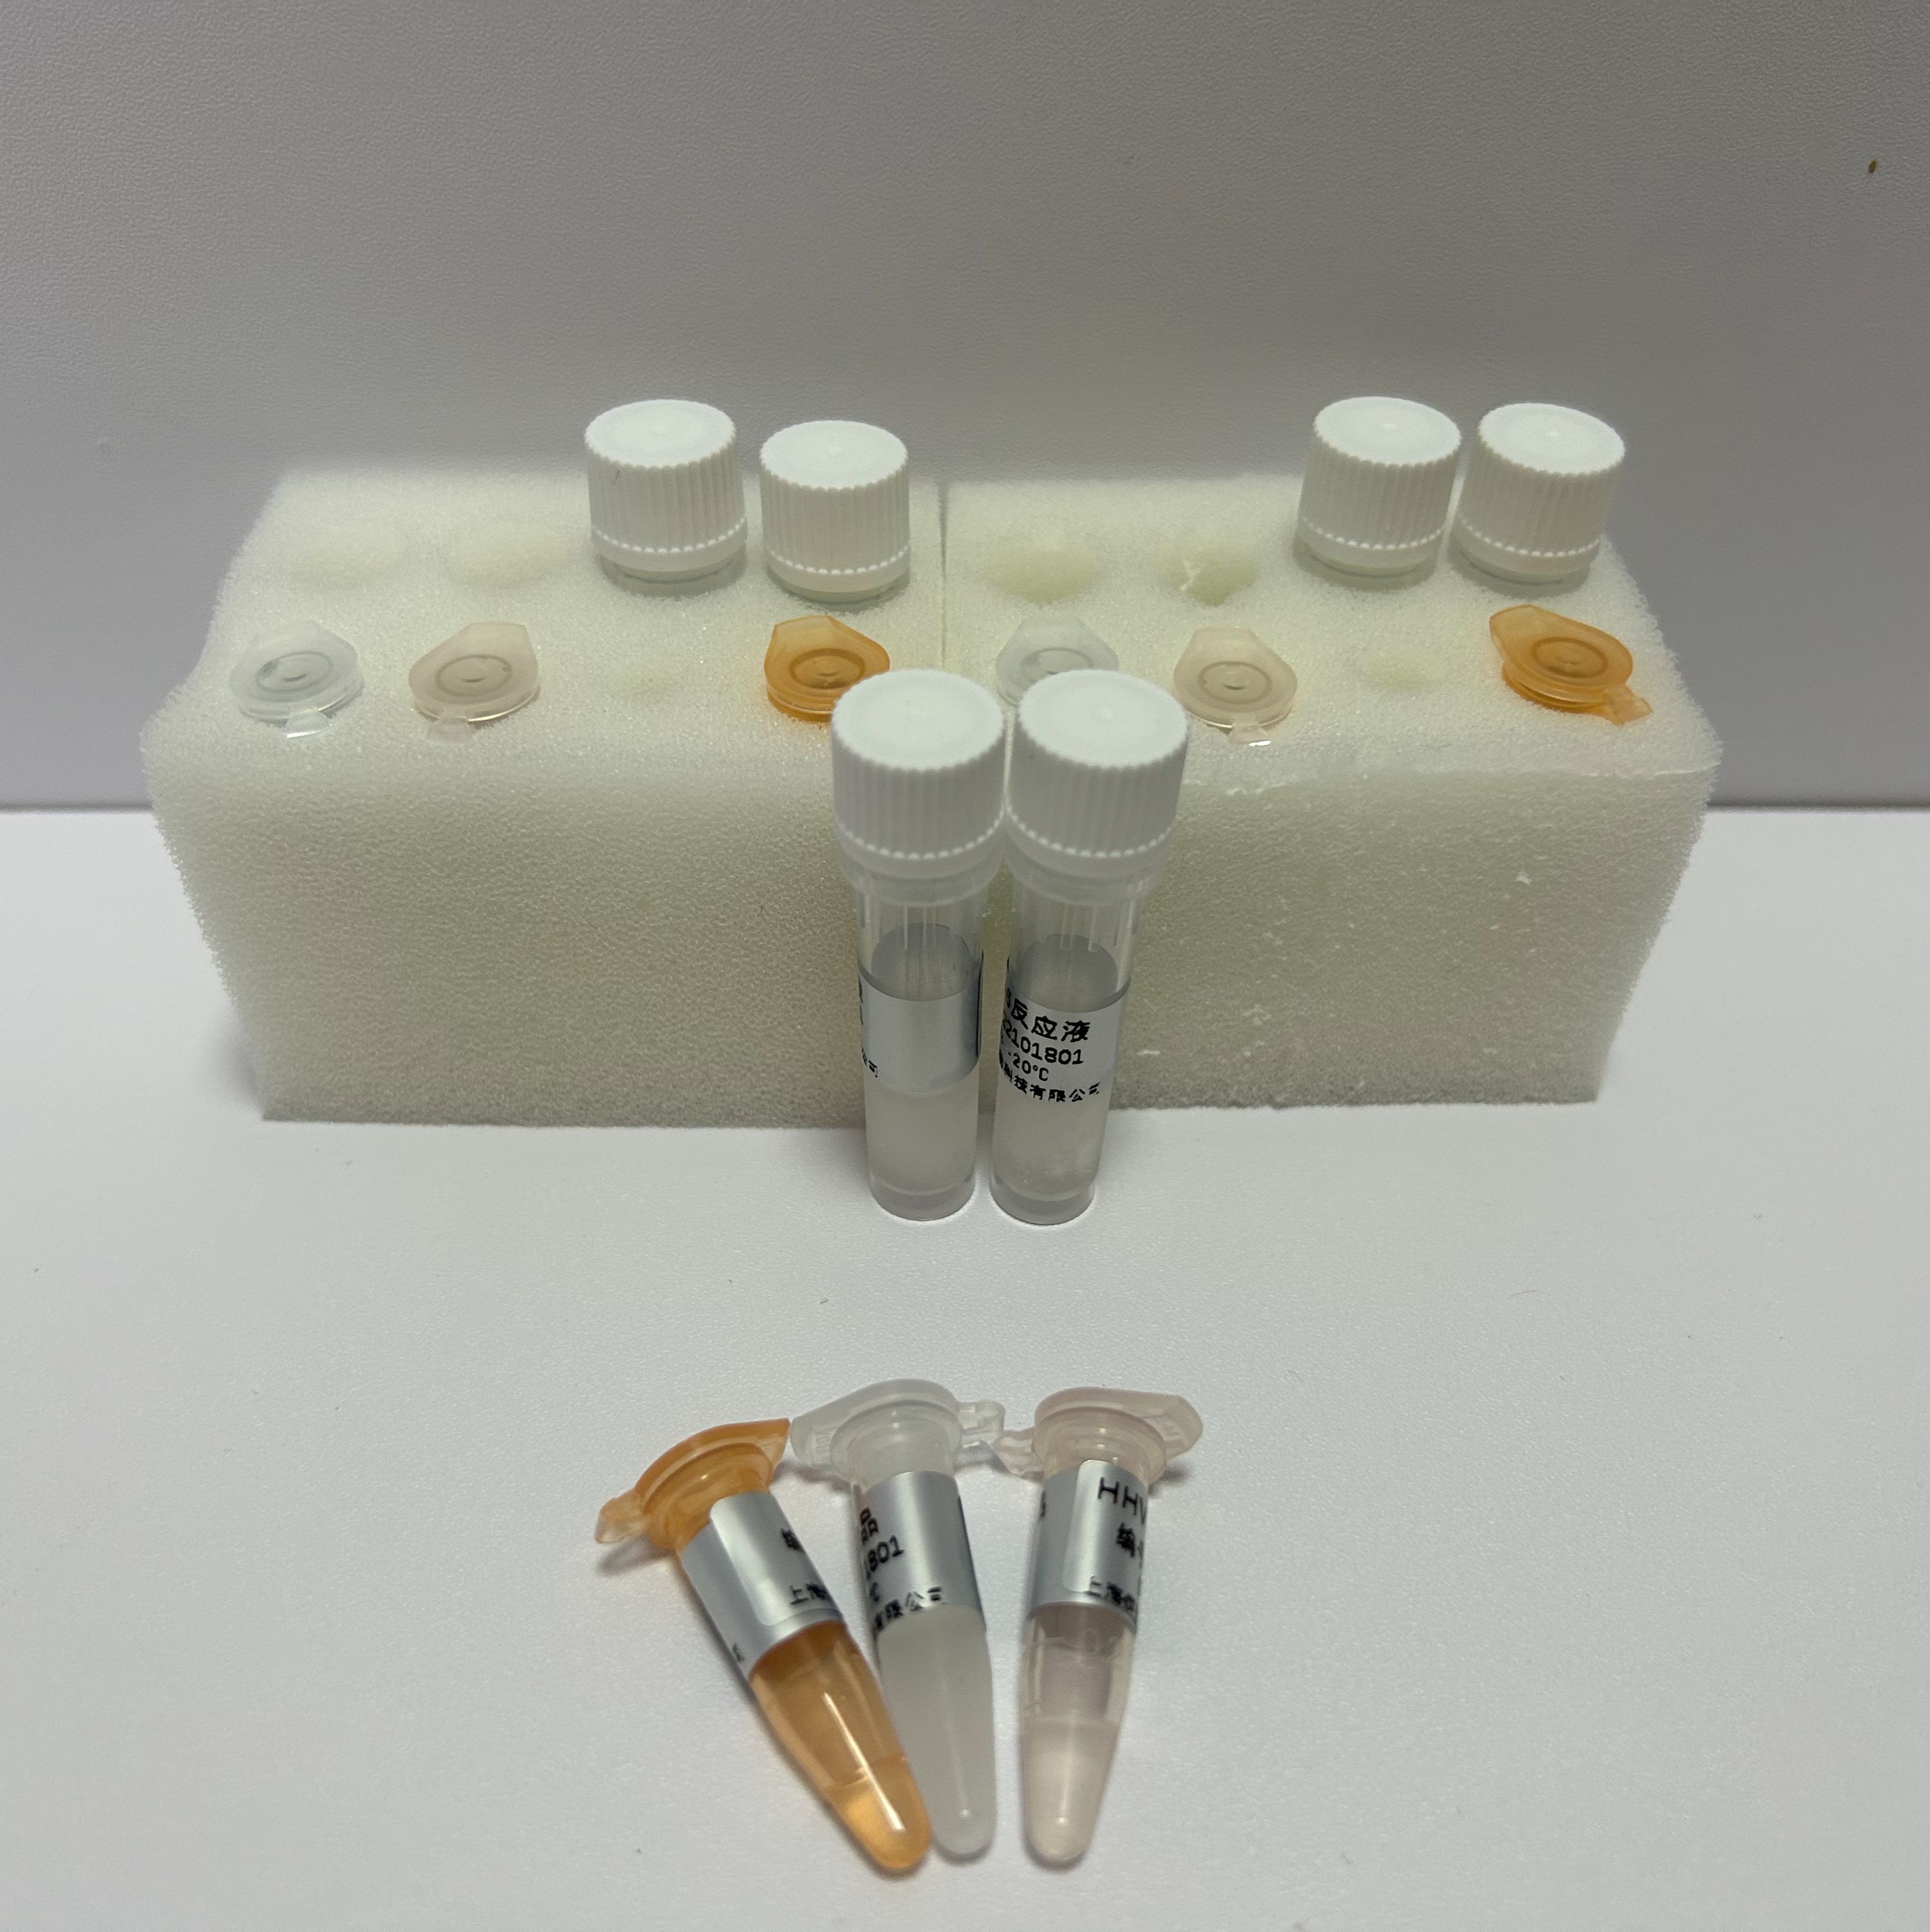 麻疹病毒探针法荧光定量RT-PCR试剂盒